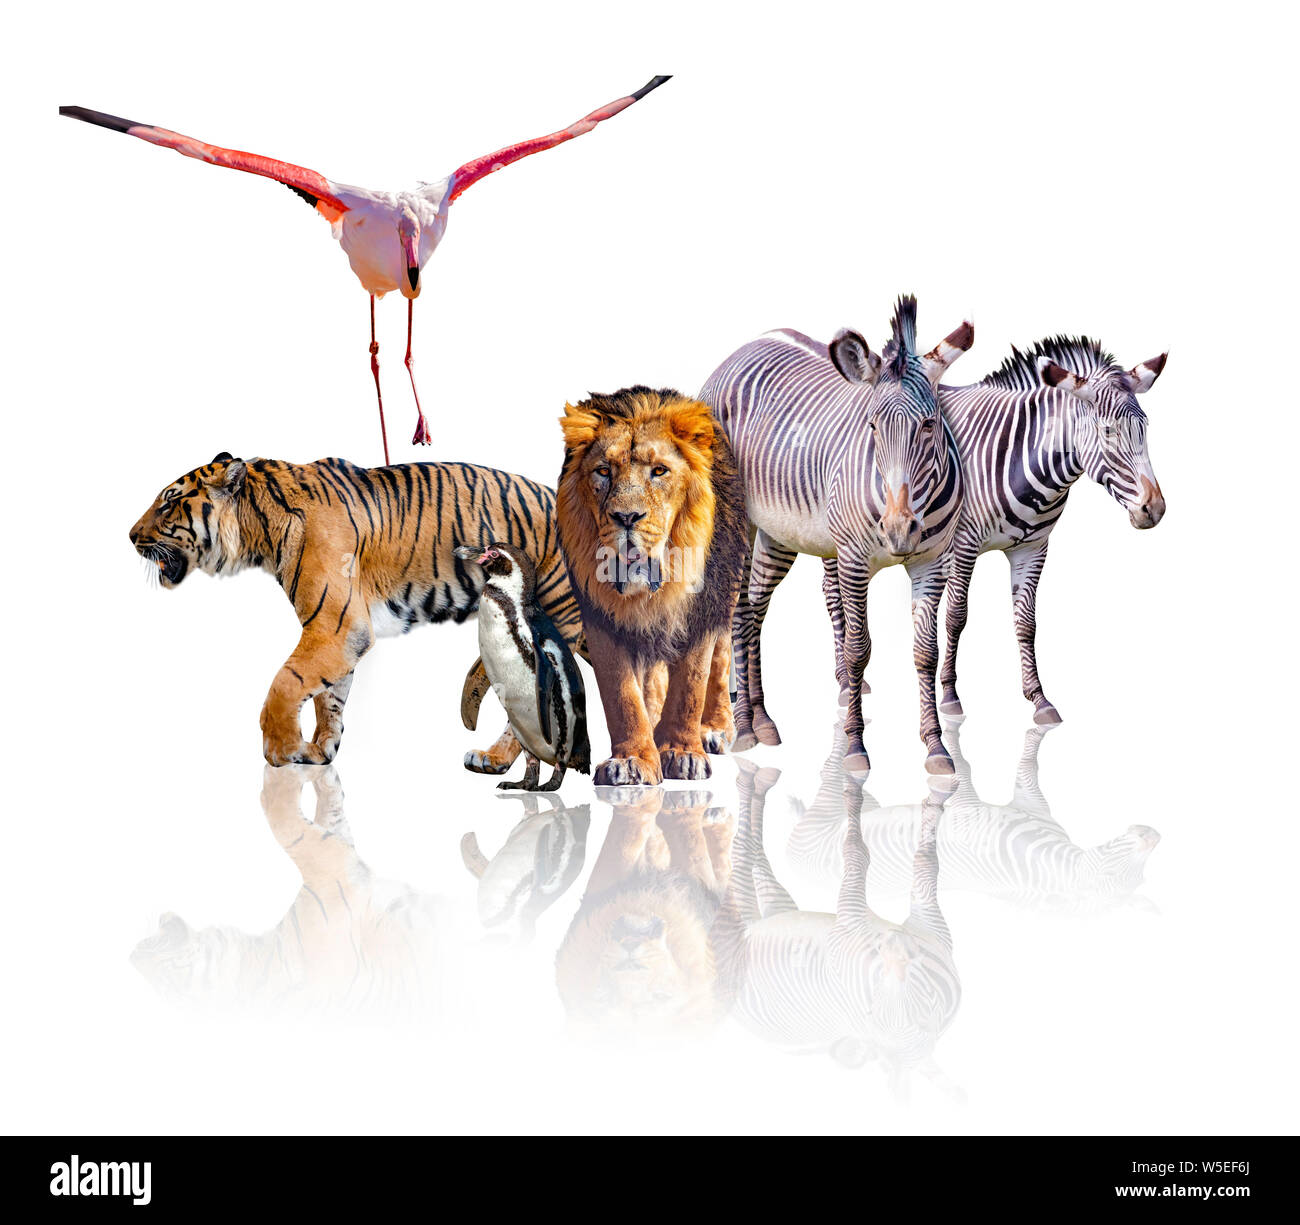 Gruppo di African Safari animali camminare insieme. Essa è isolata su uno sfondo bianco. Esso riflette la loro immagine. Ci sono le zebre, lion, Tiger Foto Stock